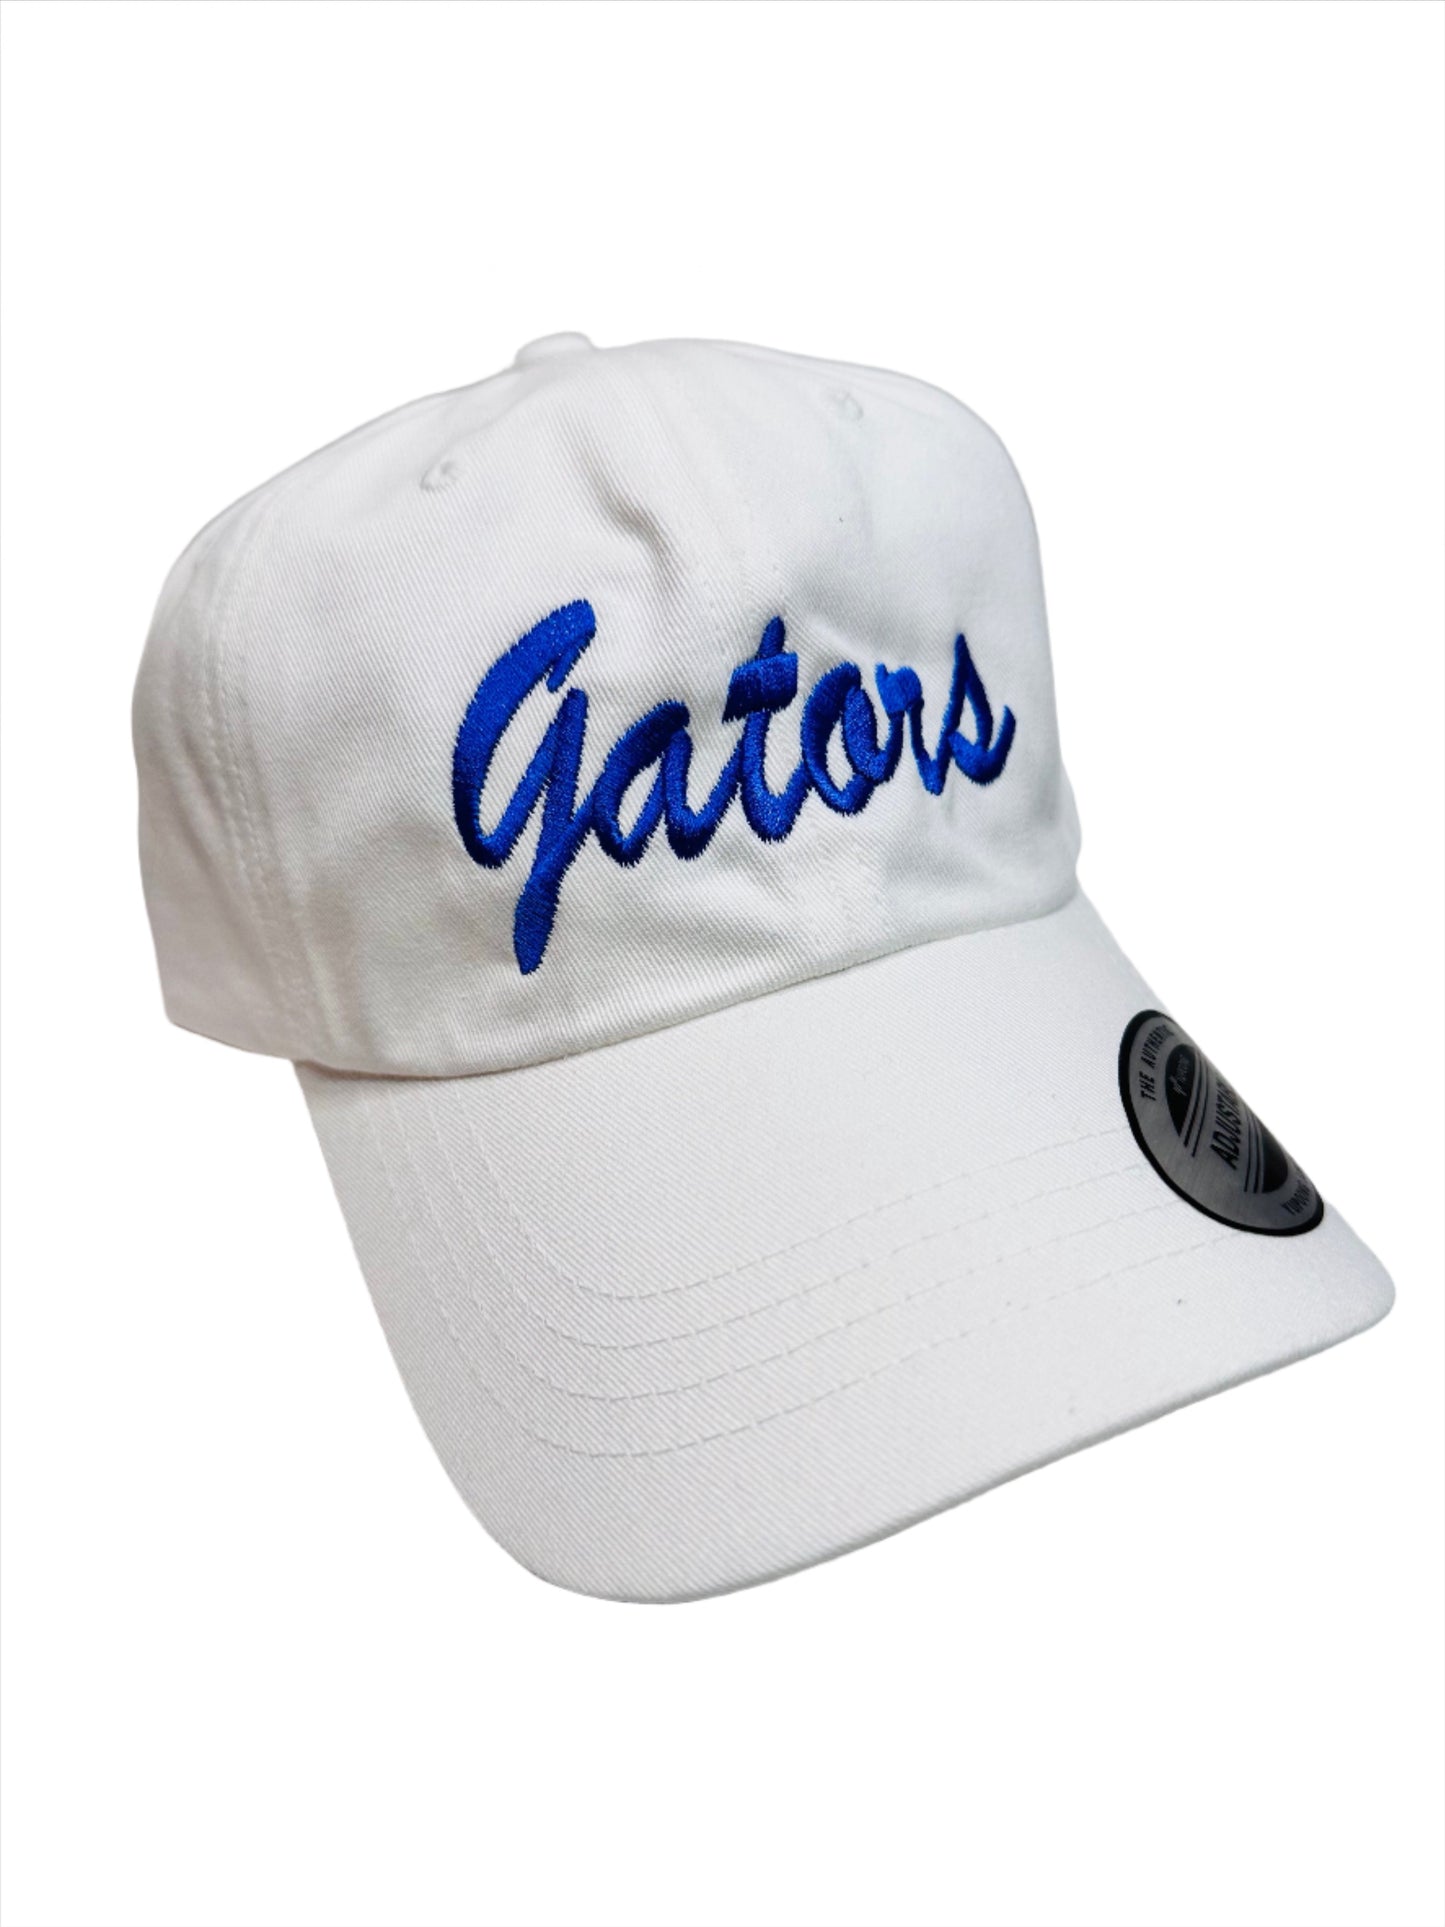 FL Gators Hat